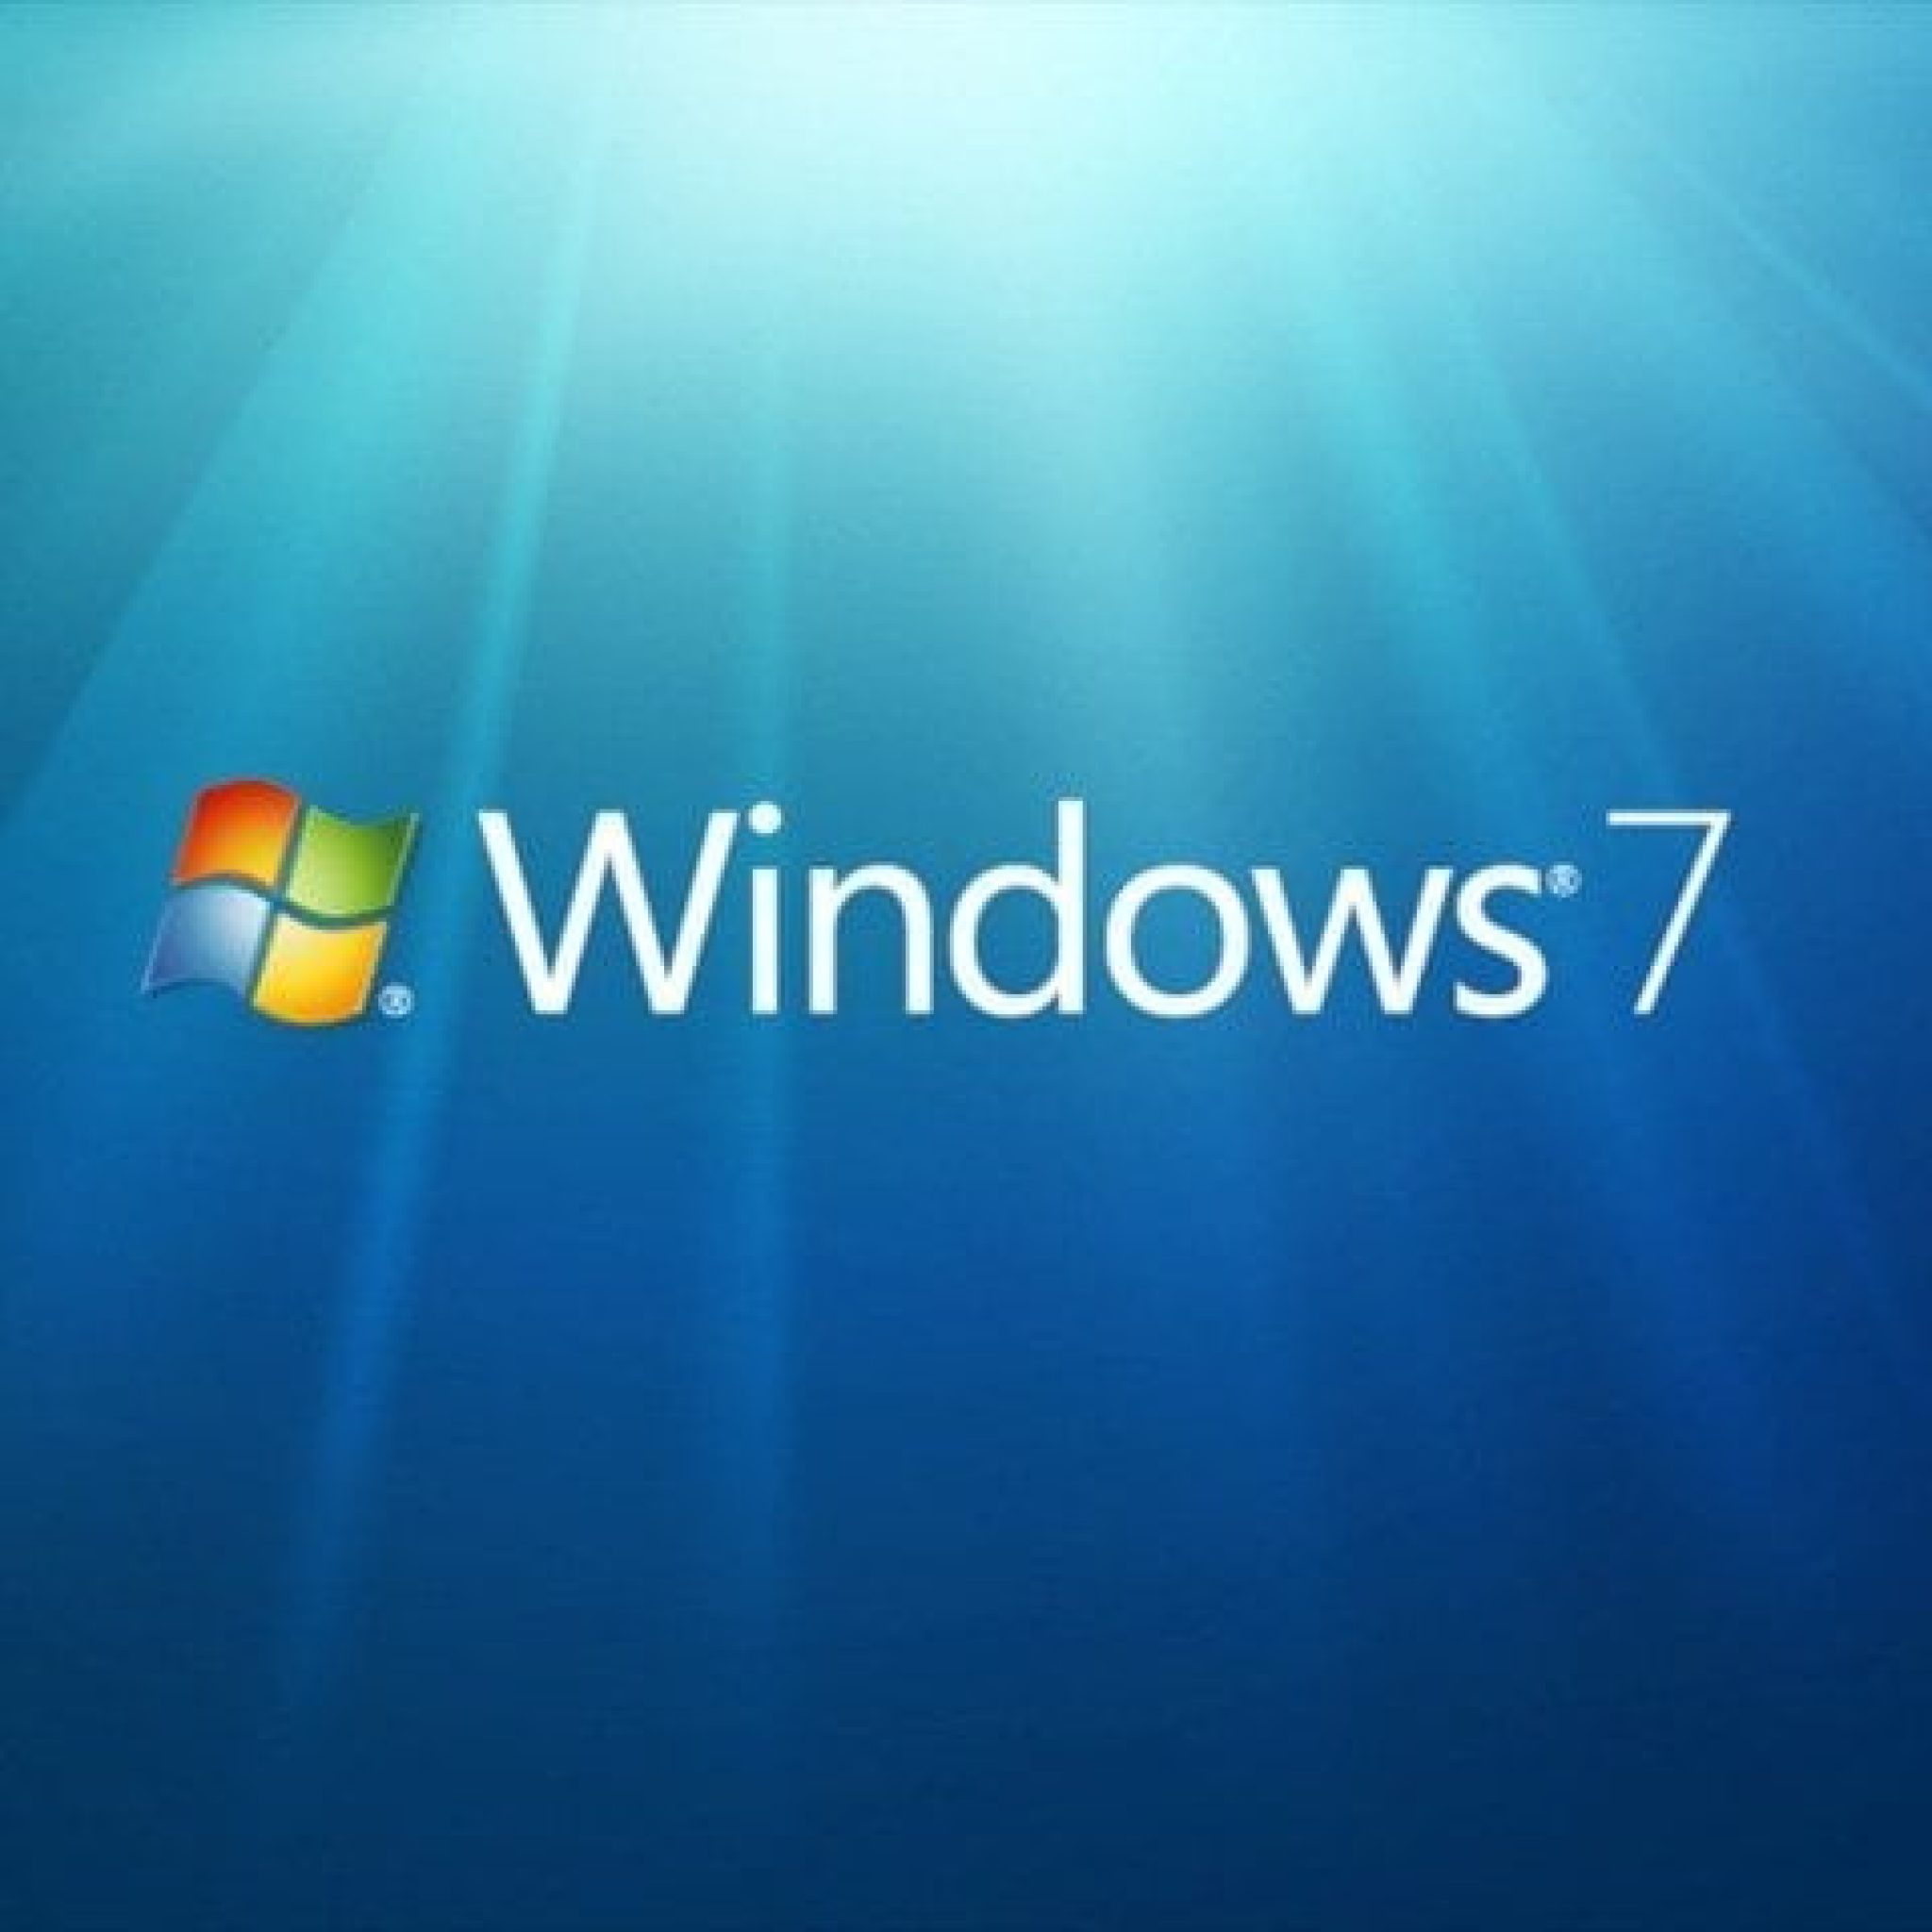 Cómo Activar Windows 7 De Forma Permanente Con Removewat V2.0 Y Chew-Wga V0.9